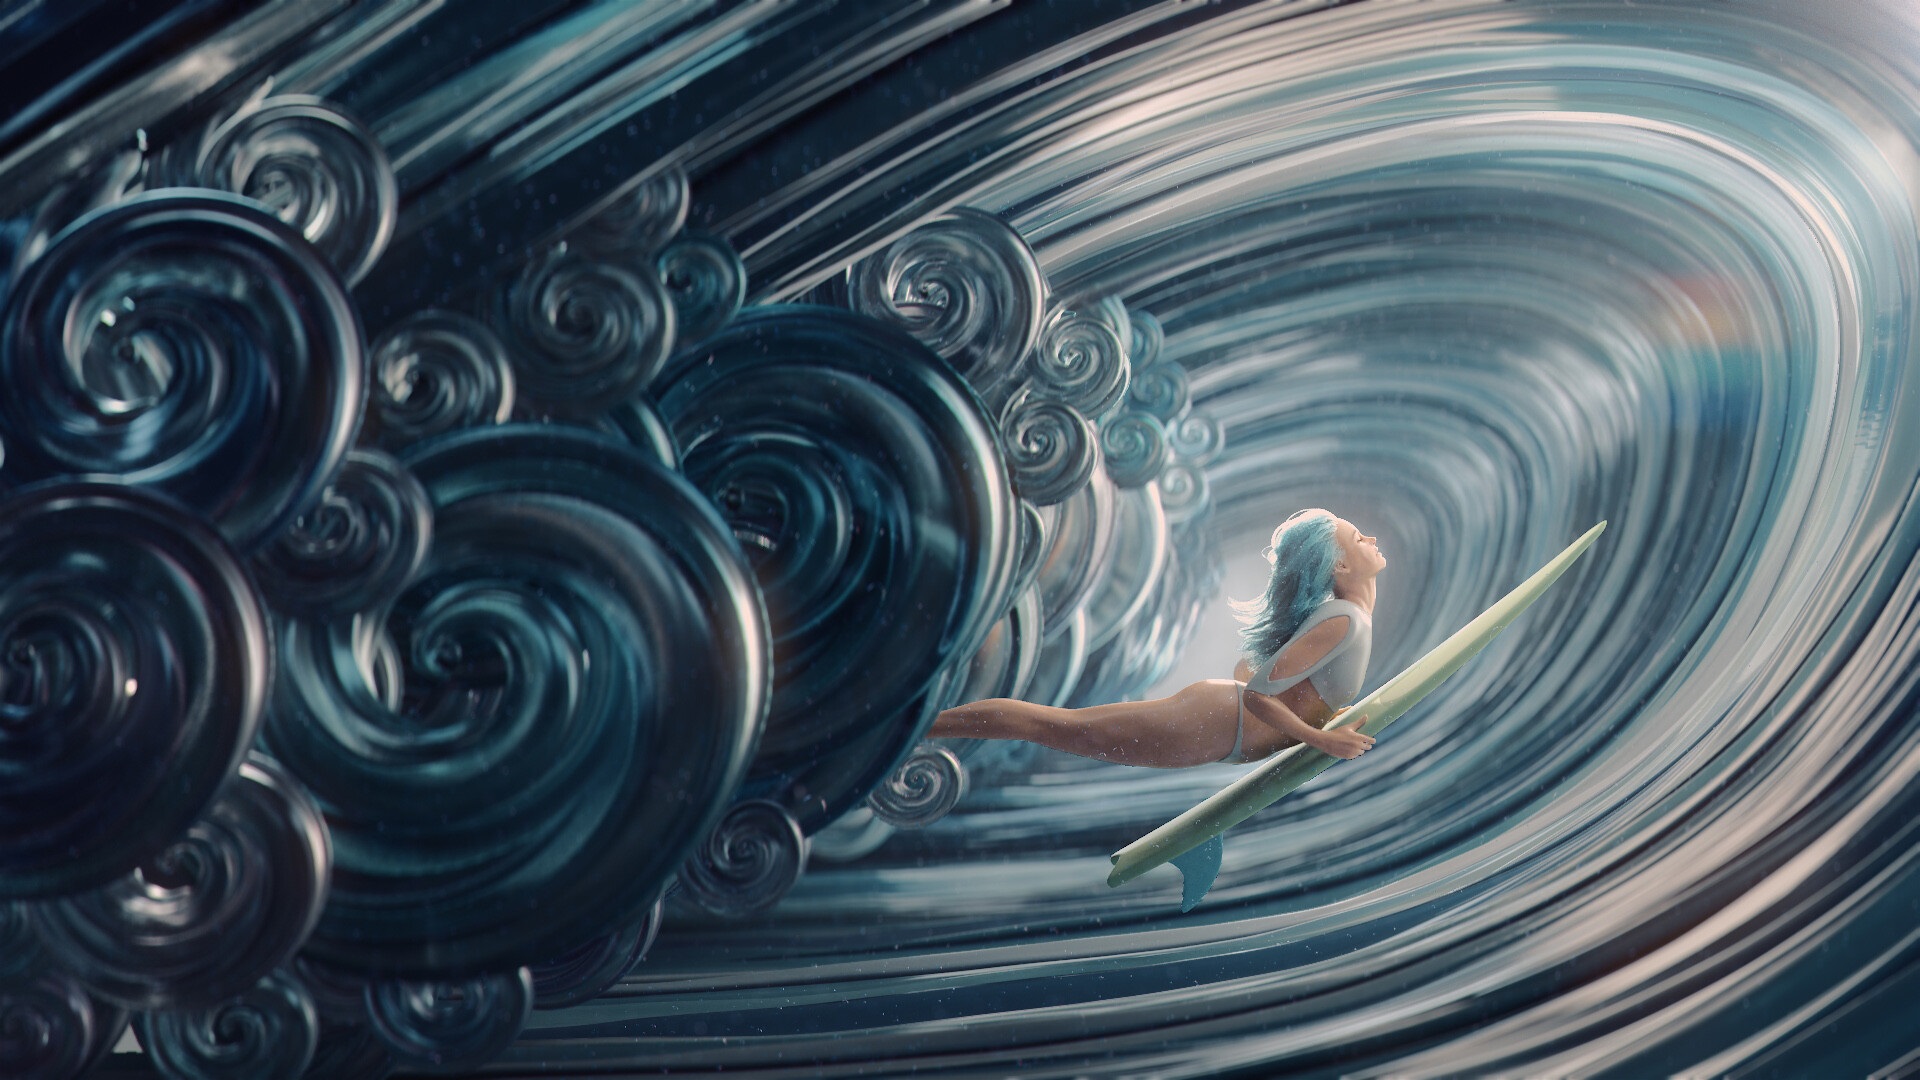 Artwork Fantasy Art Surfing Women Waves 1920x1080